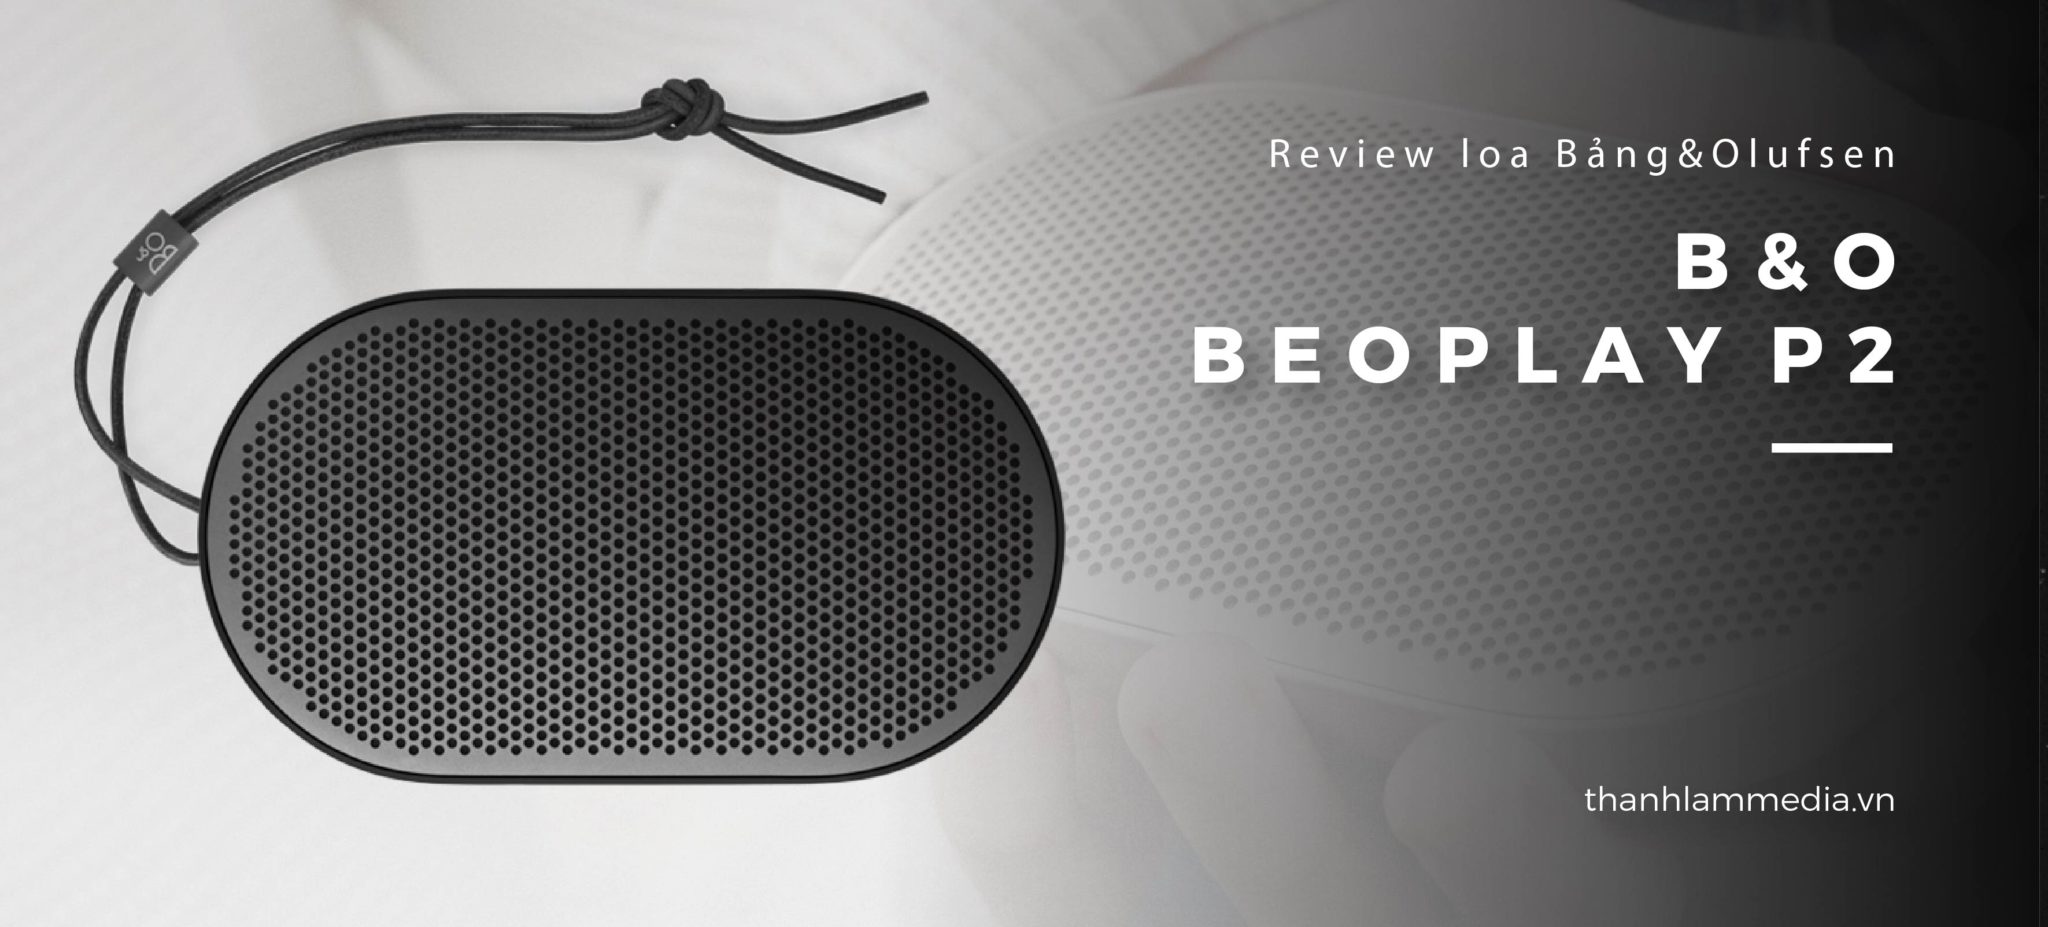 Loa B&O Beoplay P2: Thiết kế nhỏ gọn, âm thanh ấn tượng 2